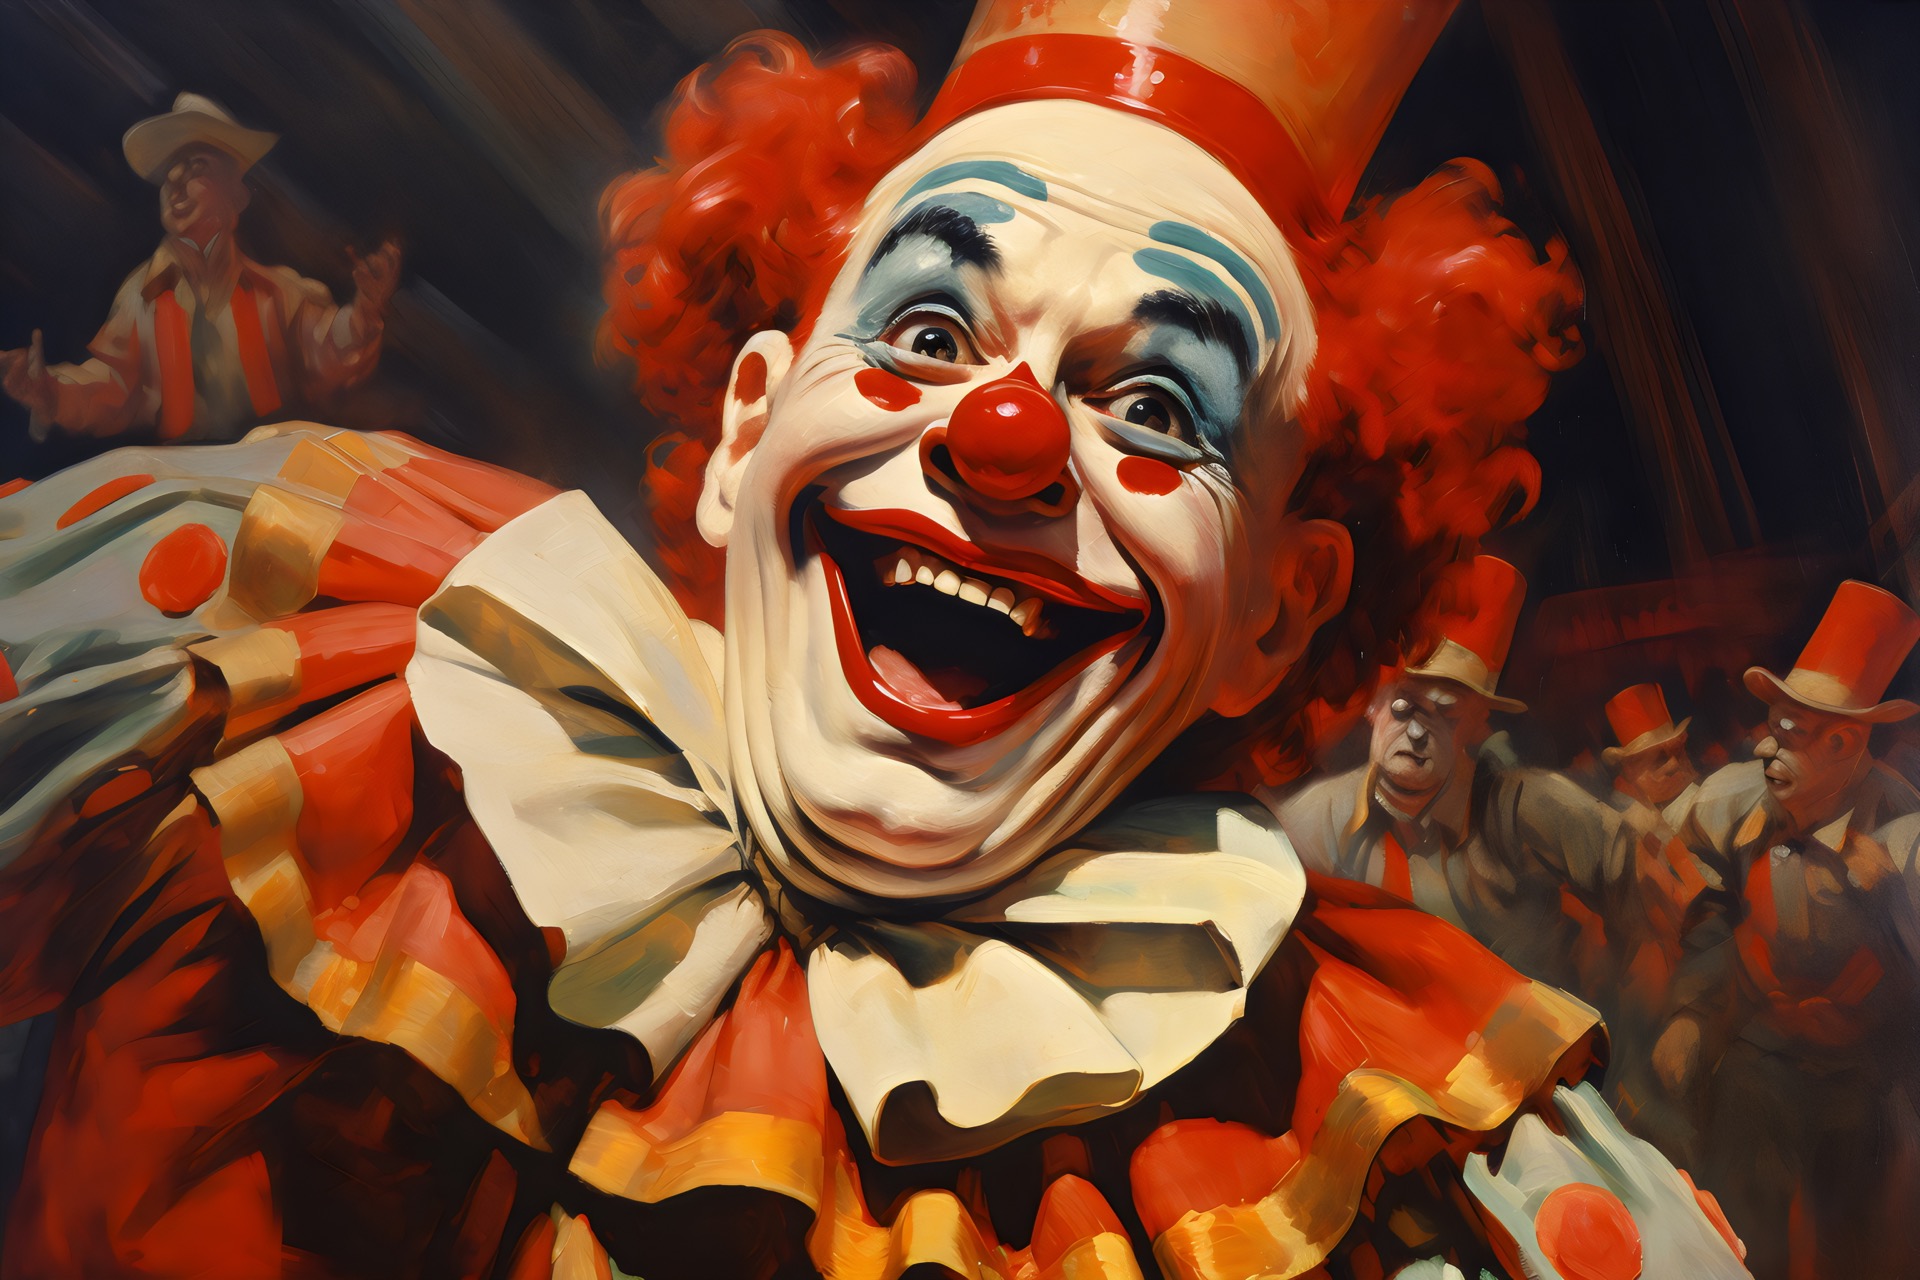 La phobie des clowns, peur irrationnelle et incontrôlable, est la « coulrophobie ». © Ricky, Adobe Stock